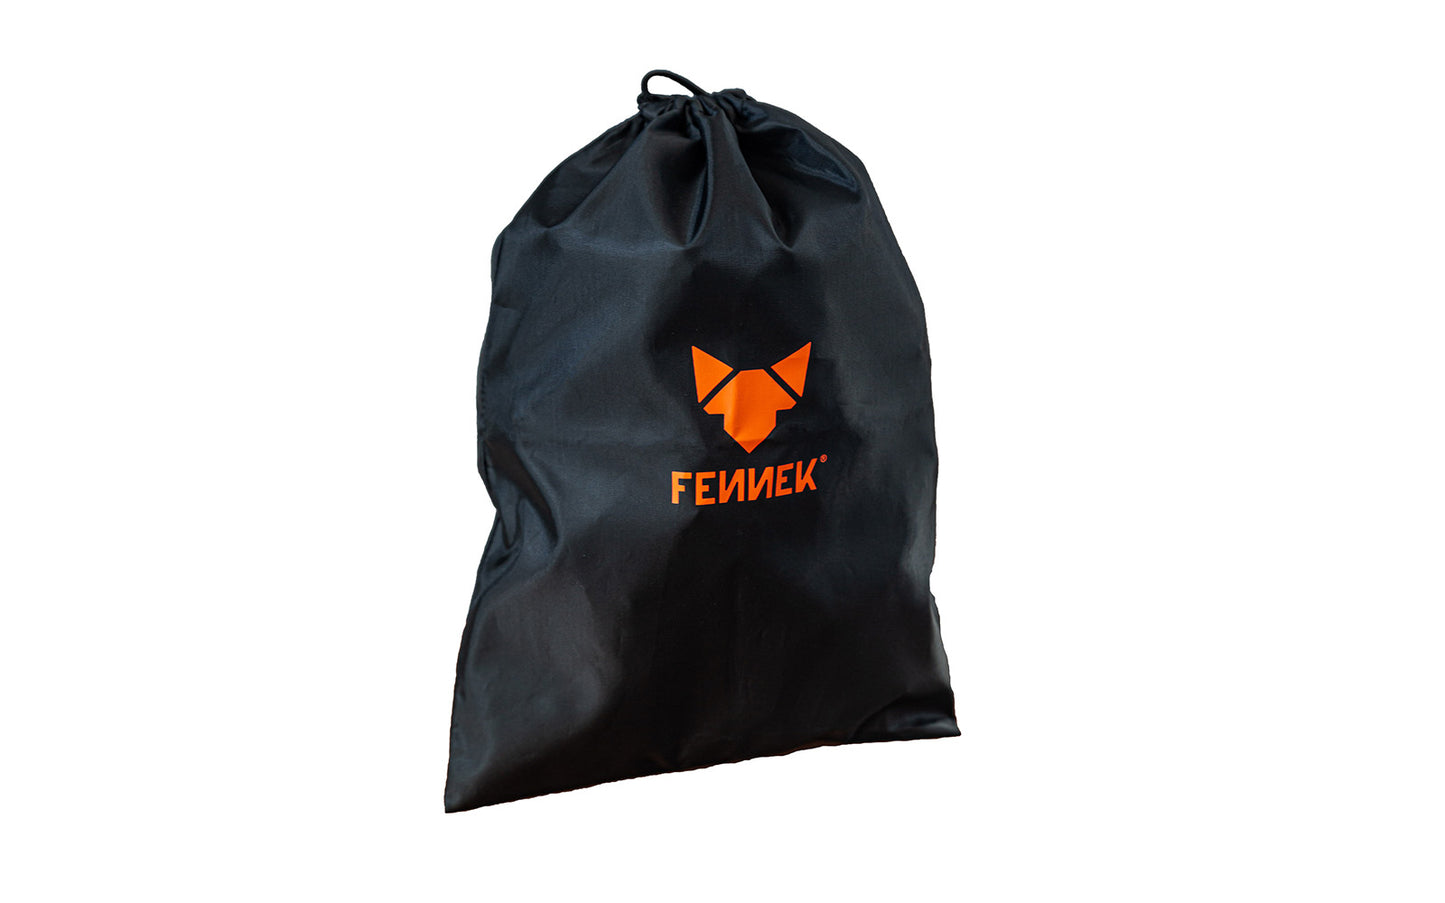 FENNEK Light mit Backpack